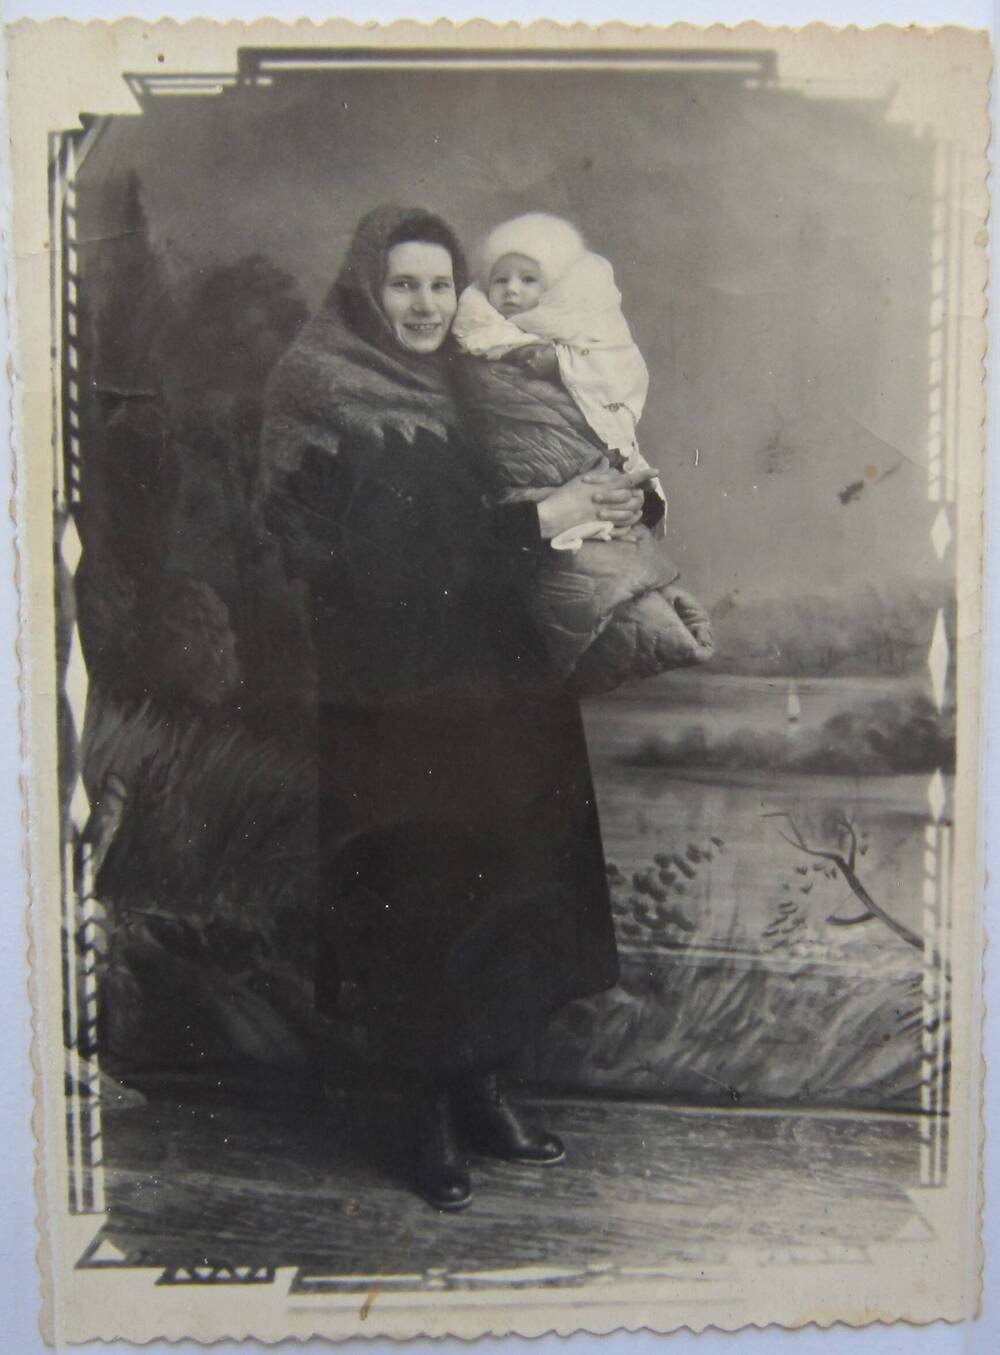 Фотоснимок. На фото женщина в верхней одежде. На голове теплый платок. На руках у женщины маленький ребёнок закутанный в одеяло.1940-е гг.   
Коллекция фотографий 40-50-х годов, собранная 
Березнёвой М. А.